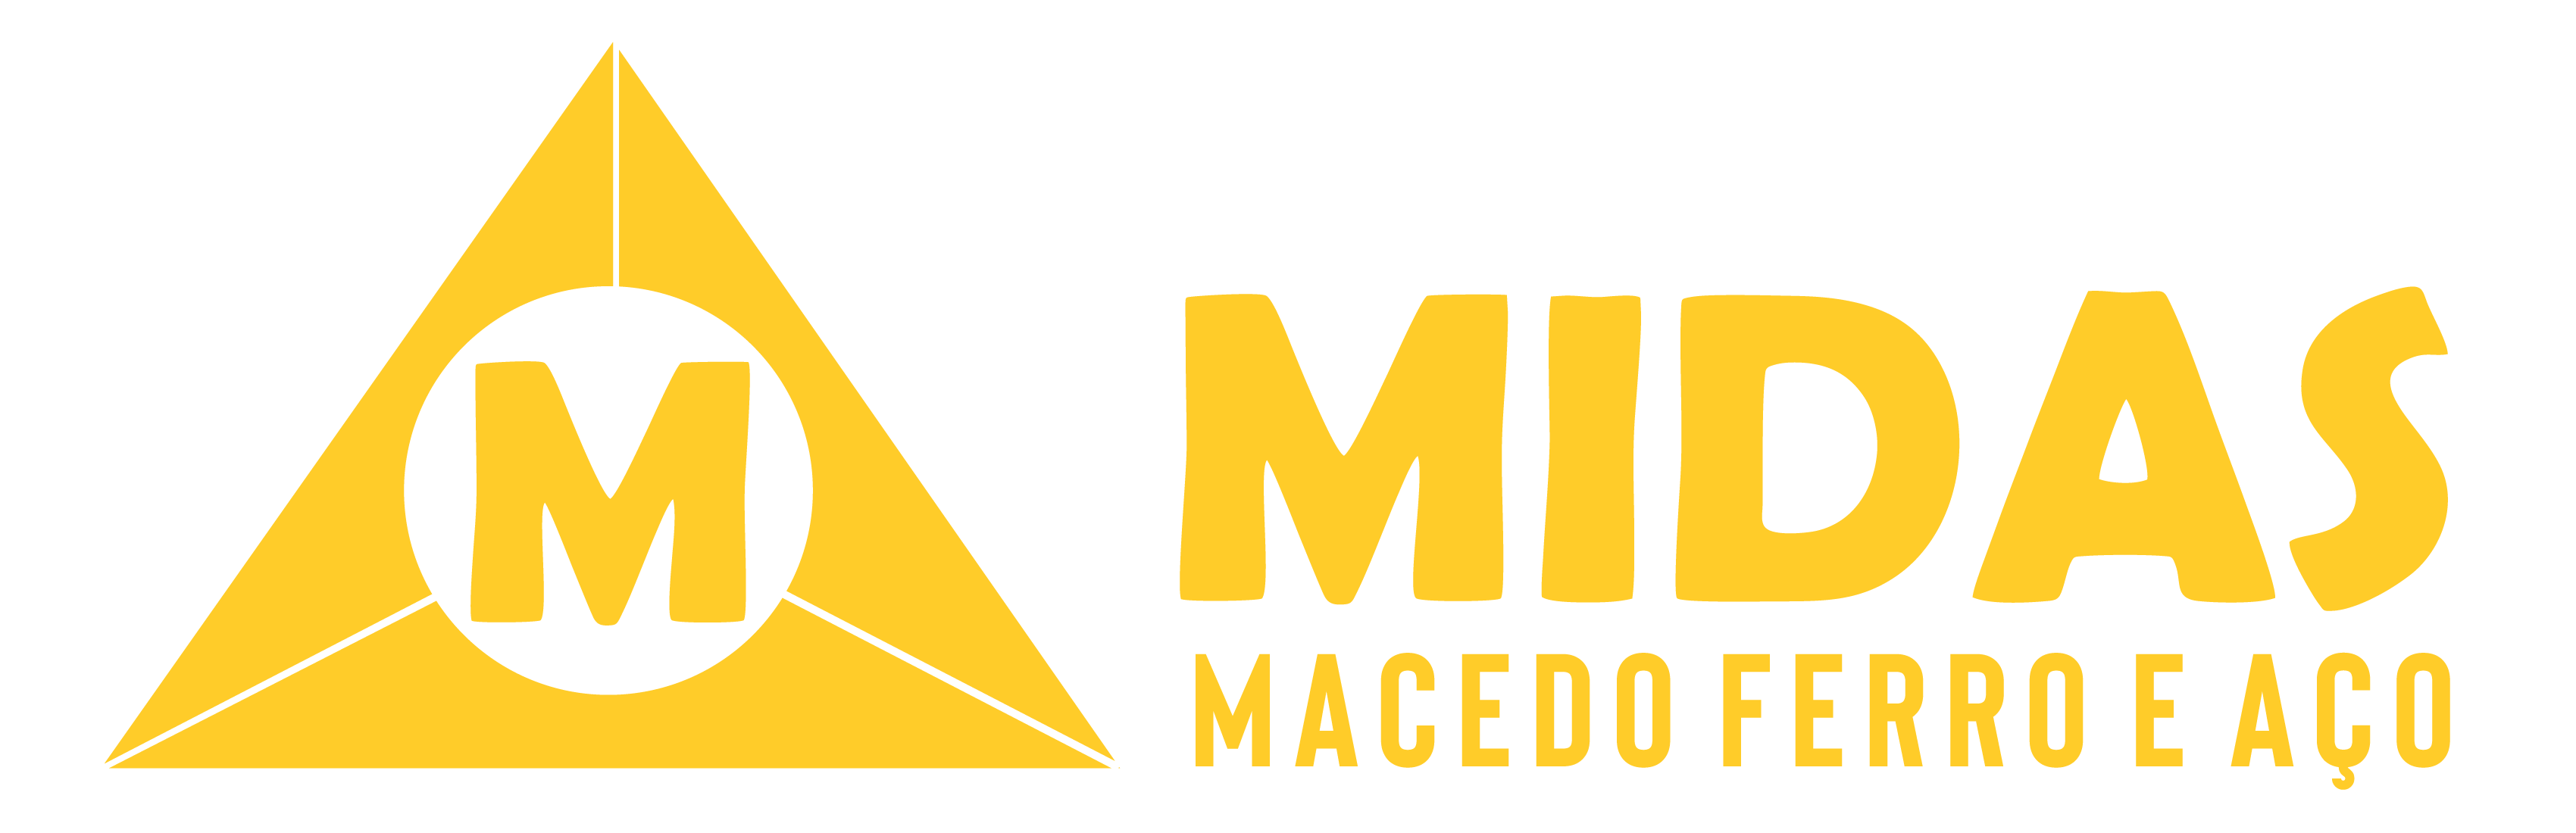 Midas Macedo Ferro e Aço